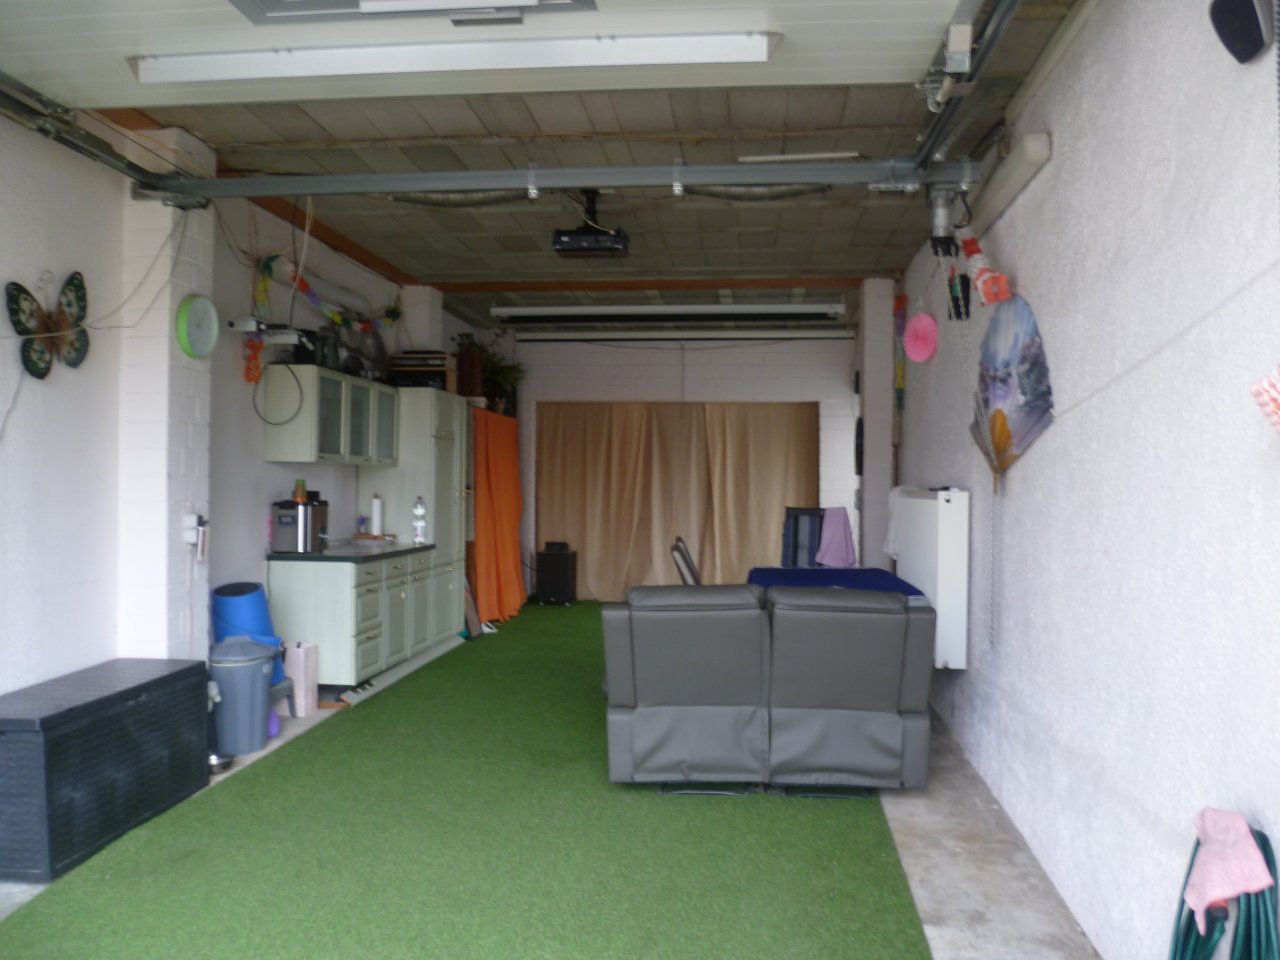 Ehemalige Garage / Eingangsbereich, z.Zt. genutzt als "Event-Raum"